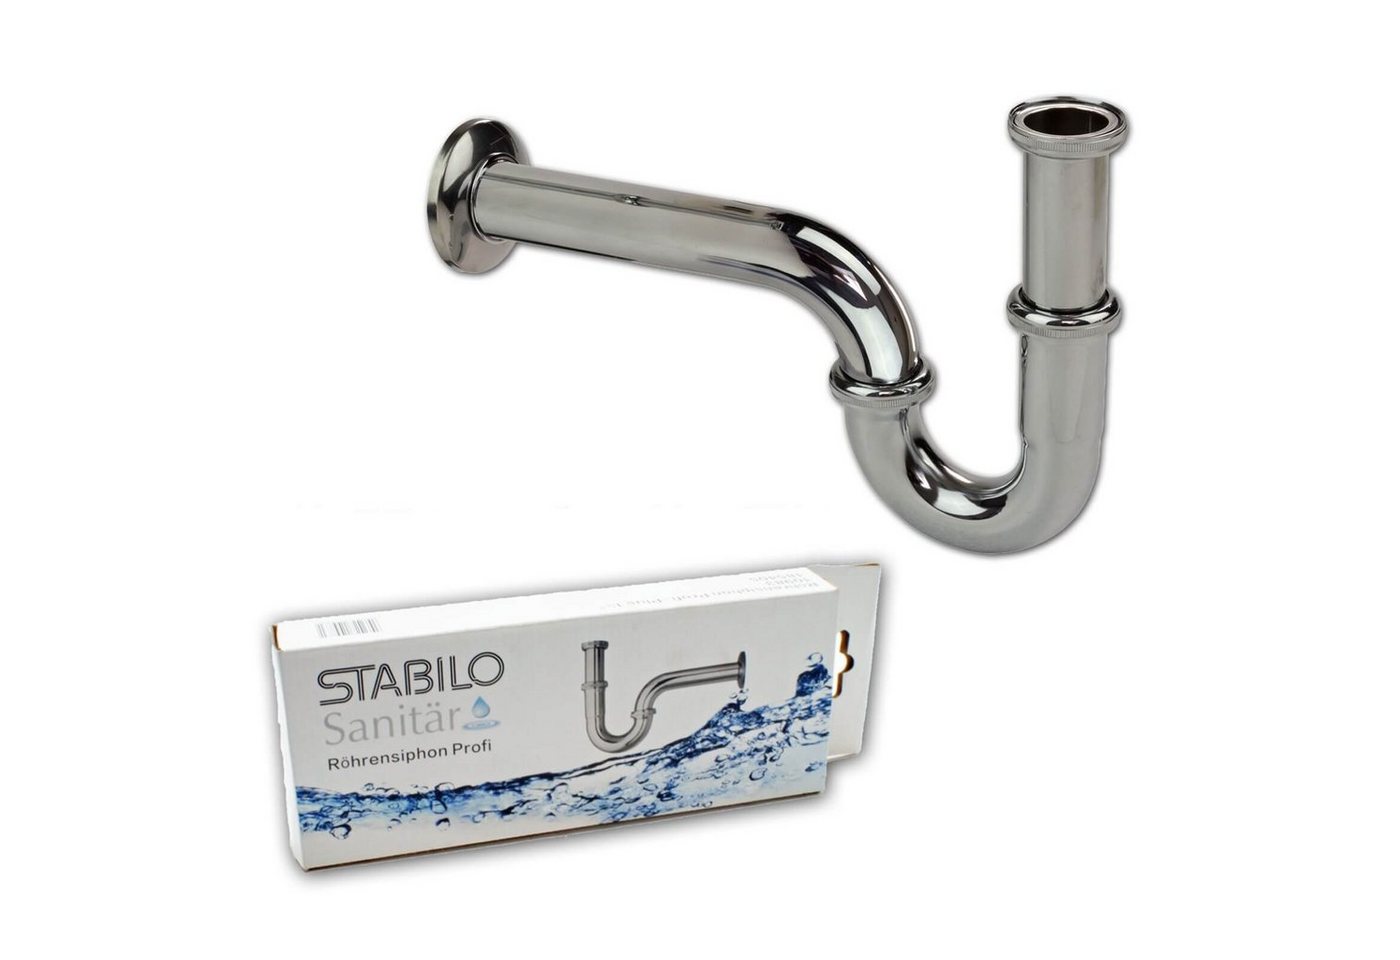 Stabilo Sanitär Siphon Bad Waschbecken Siphon 1 1/4 Zoll x 32 mm Röhrensiphon verchromt von Stabilo Sanitär